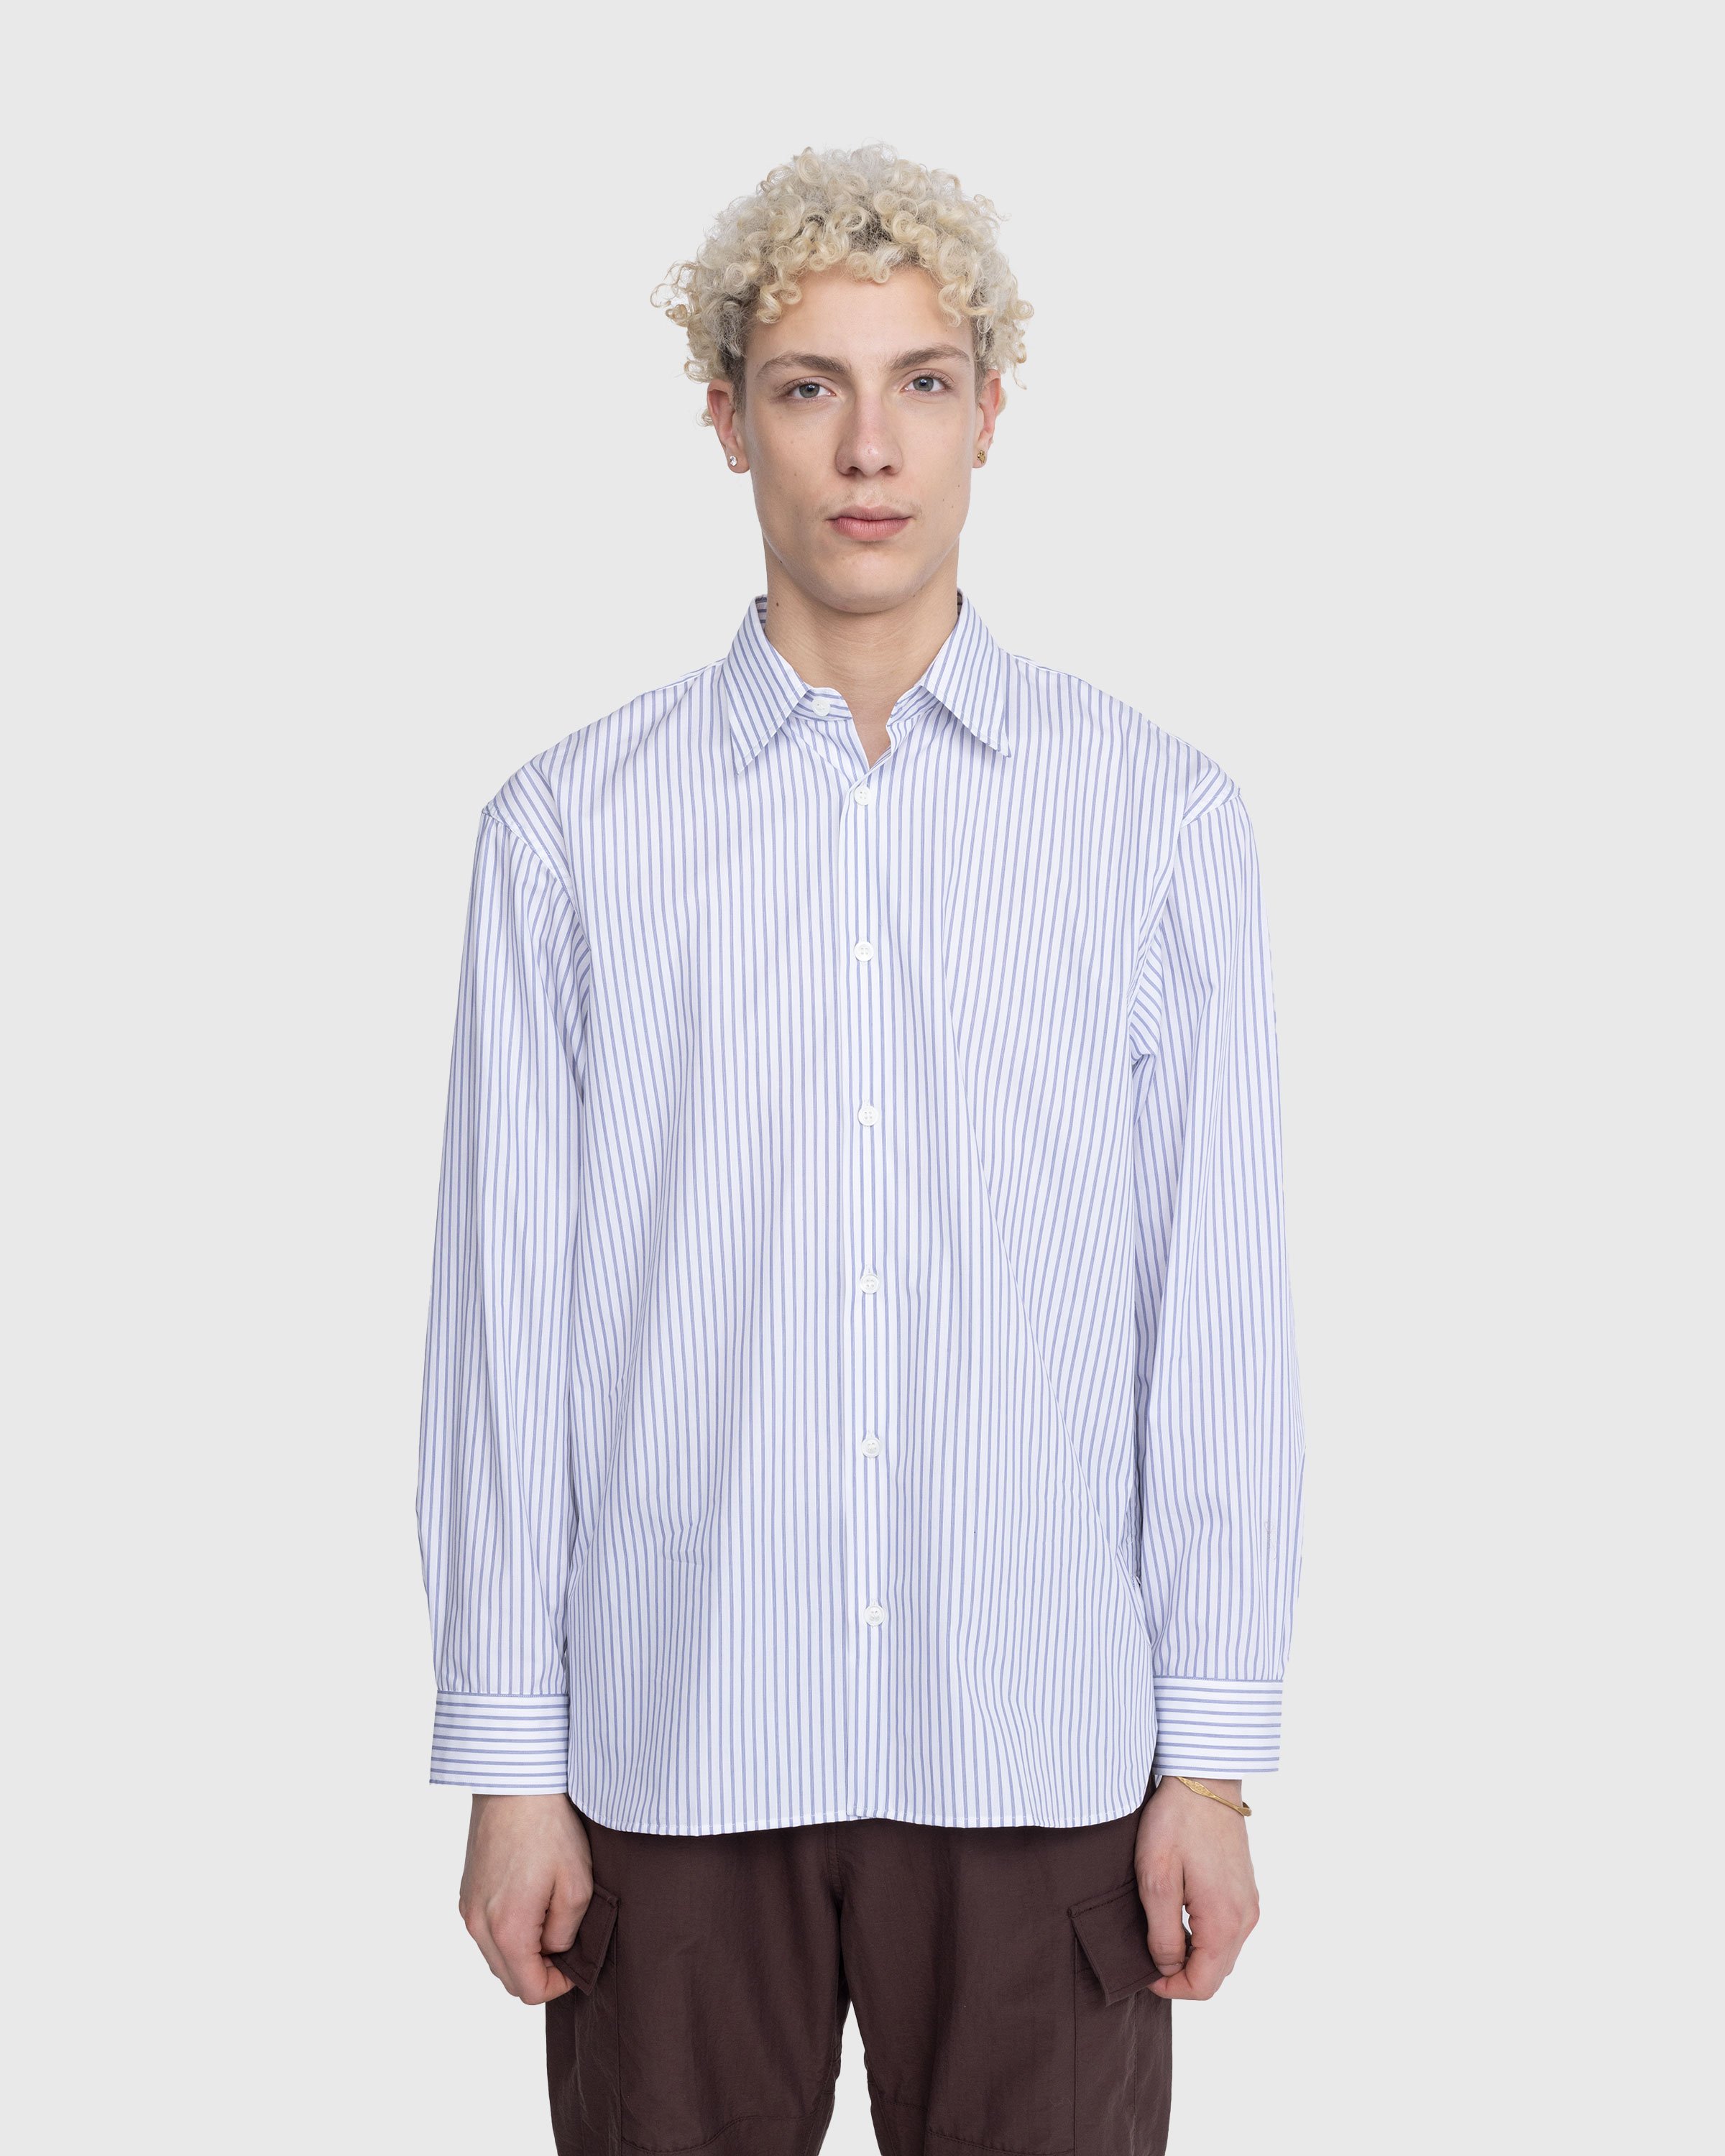 Dries van Noten - Croom Shirt White - Clothing - White - Image 2